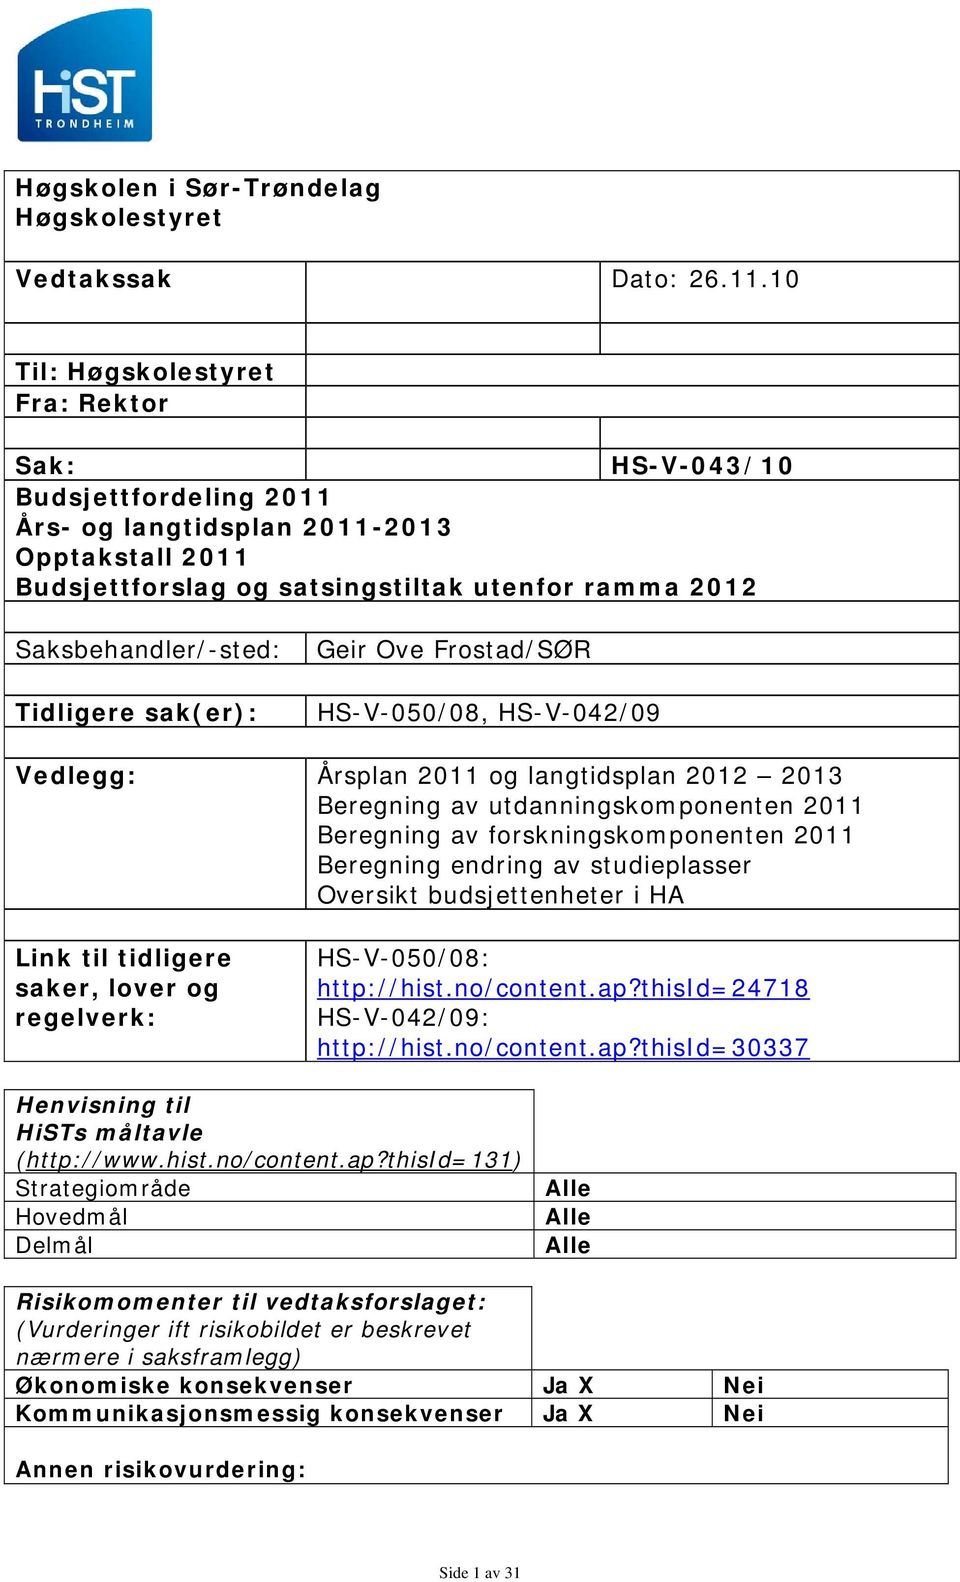 Tidligere sak(er): Geir Ove Frostad/SØR HS-V-050/08, HS-V-042/09 Vedlegg: Årsplan 2011 og langtidsplan 2012 2013 Beregning av utdanningskomponenten 2011 Beregning av forskningskomponenten 2011